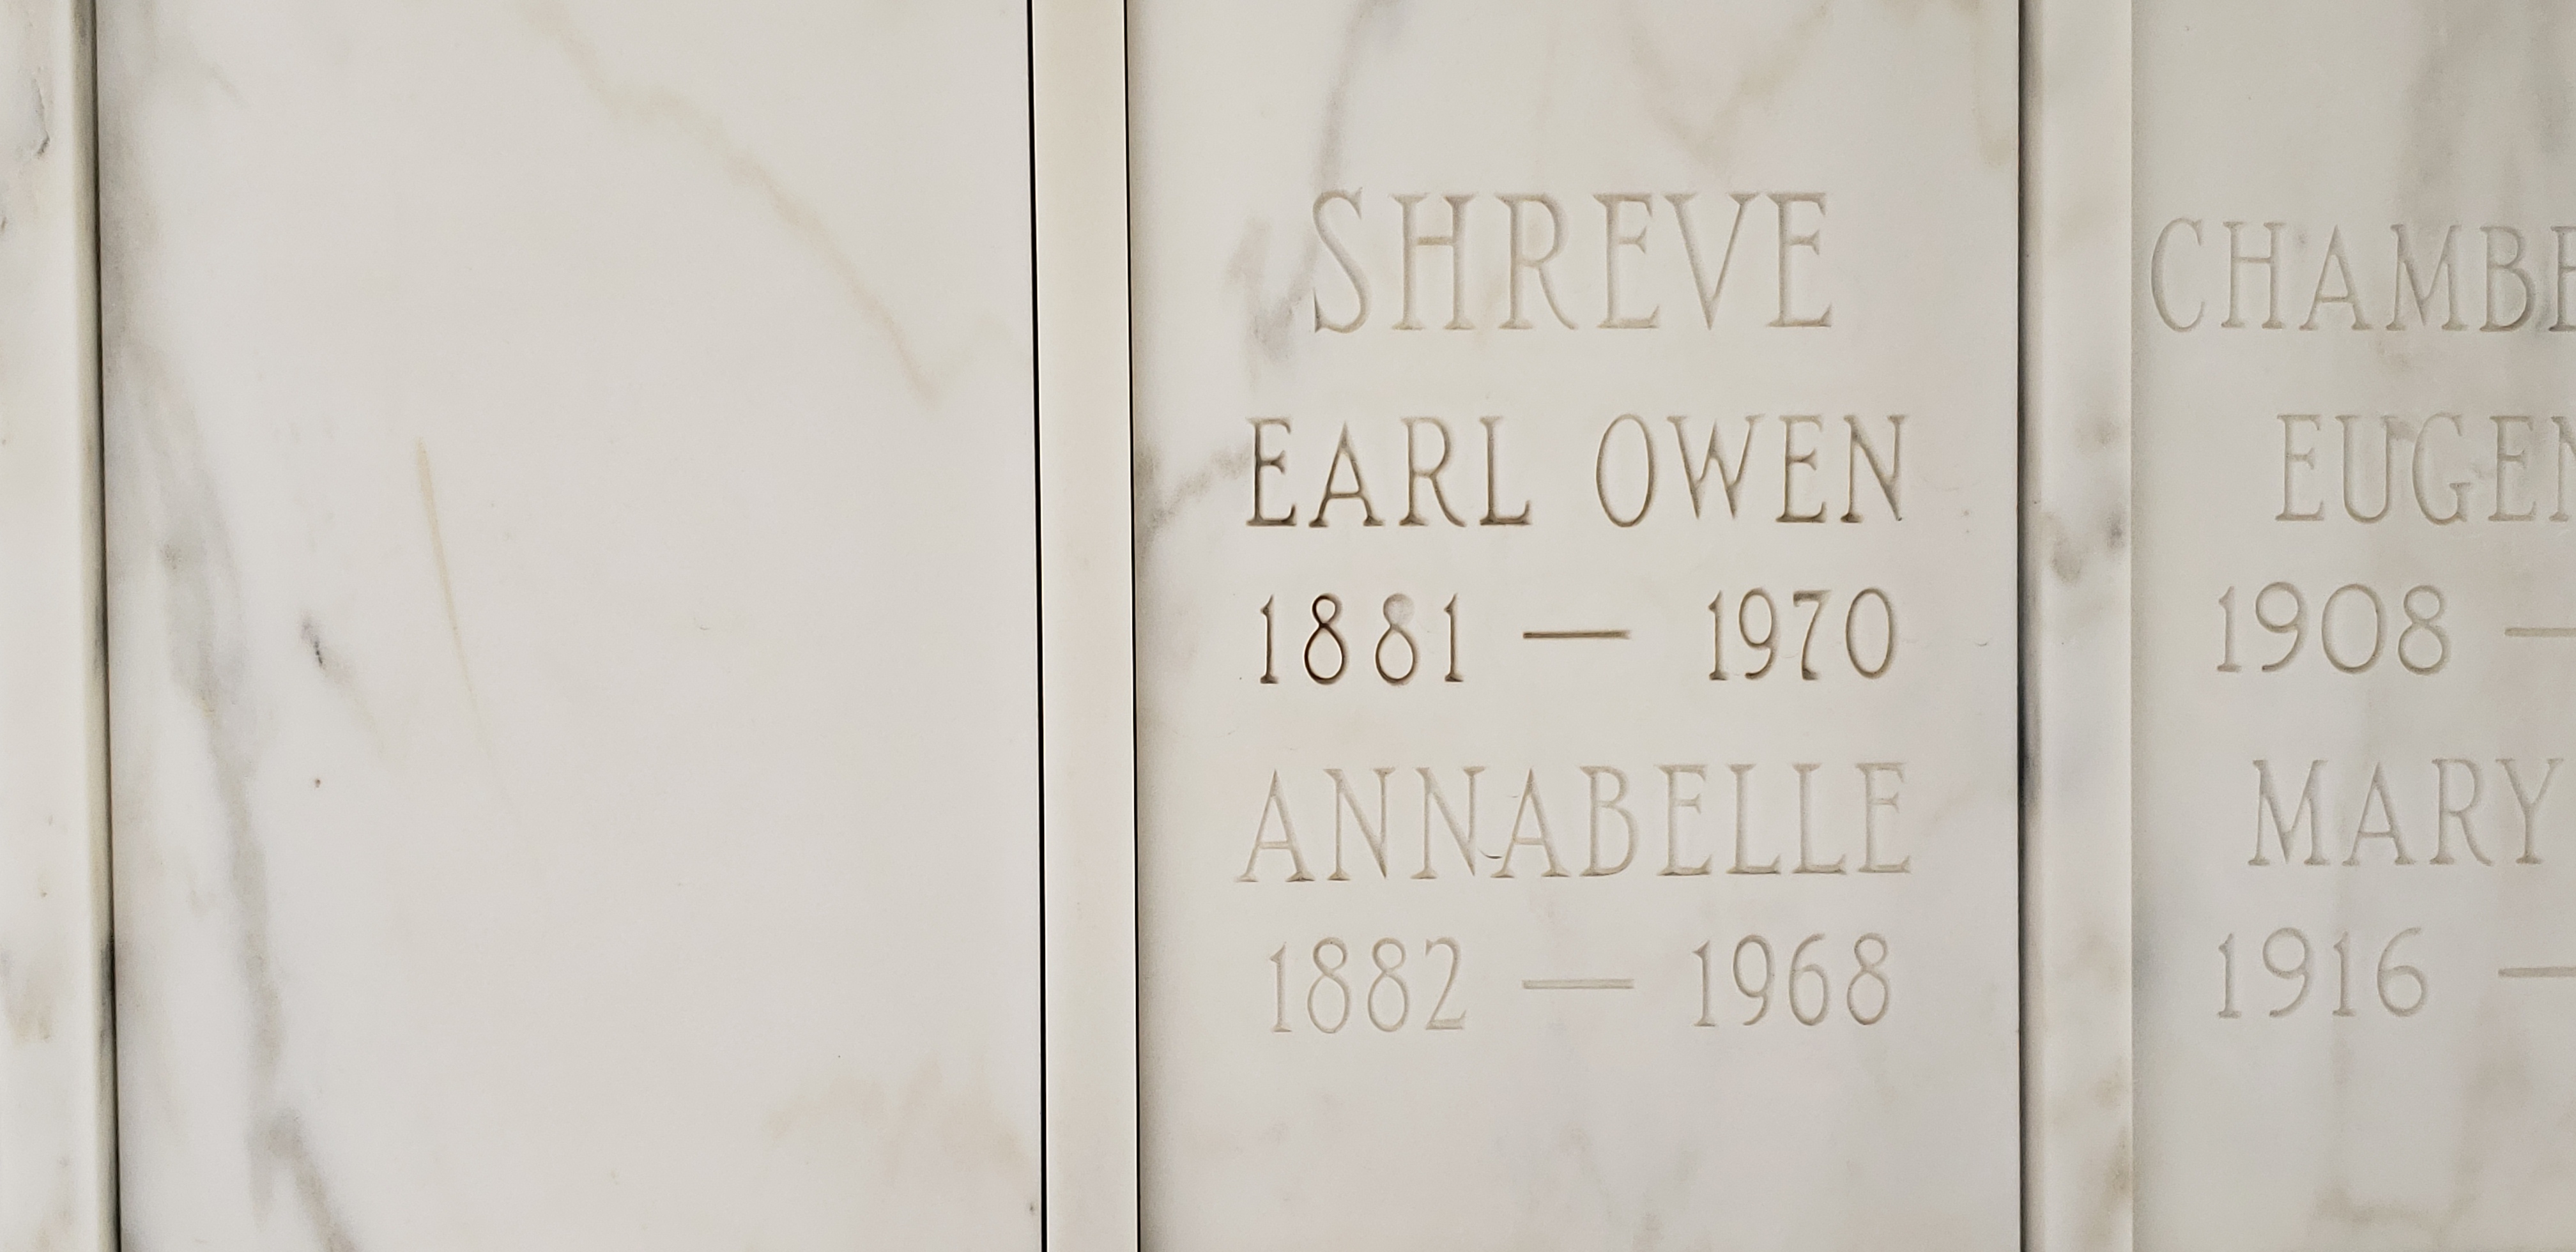 Earl Owen Shreve